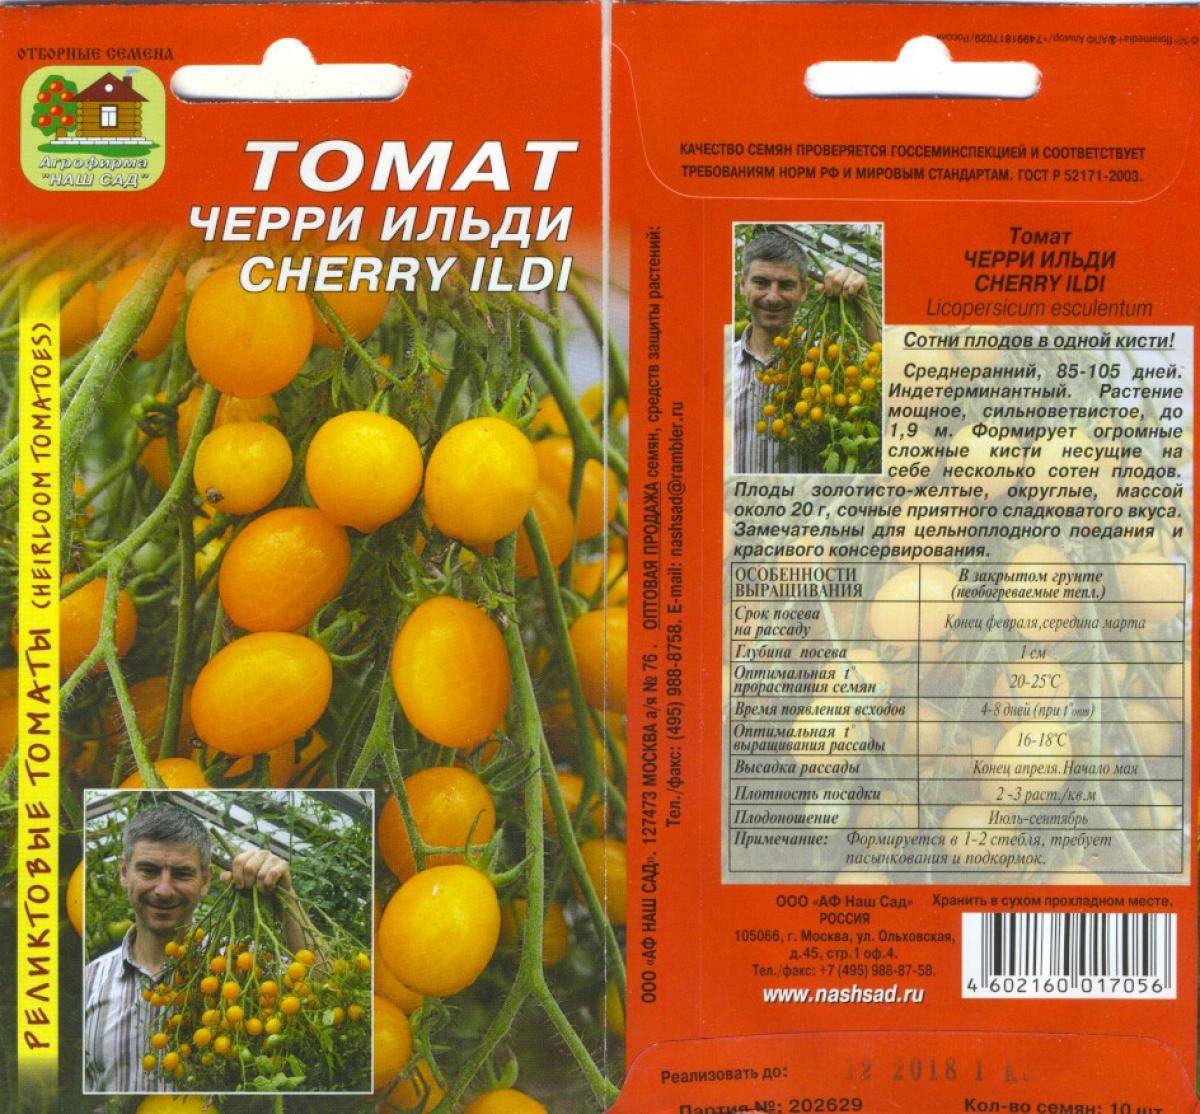 Желтые мясистые плоды — томат медовый ароматный: характеристика и описание сорта